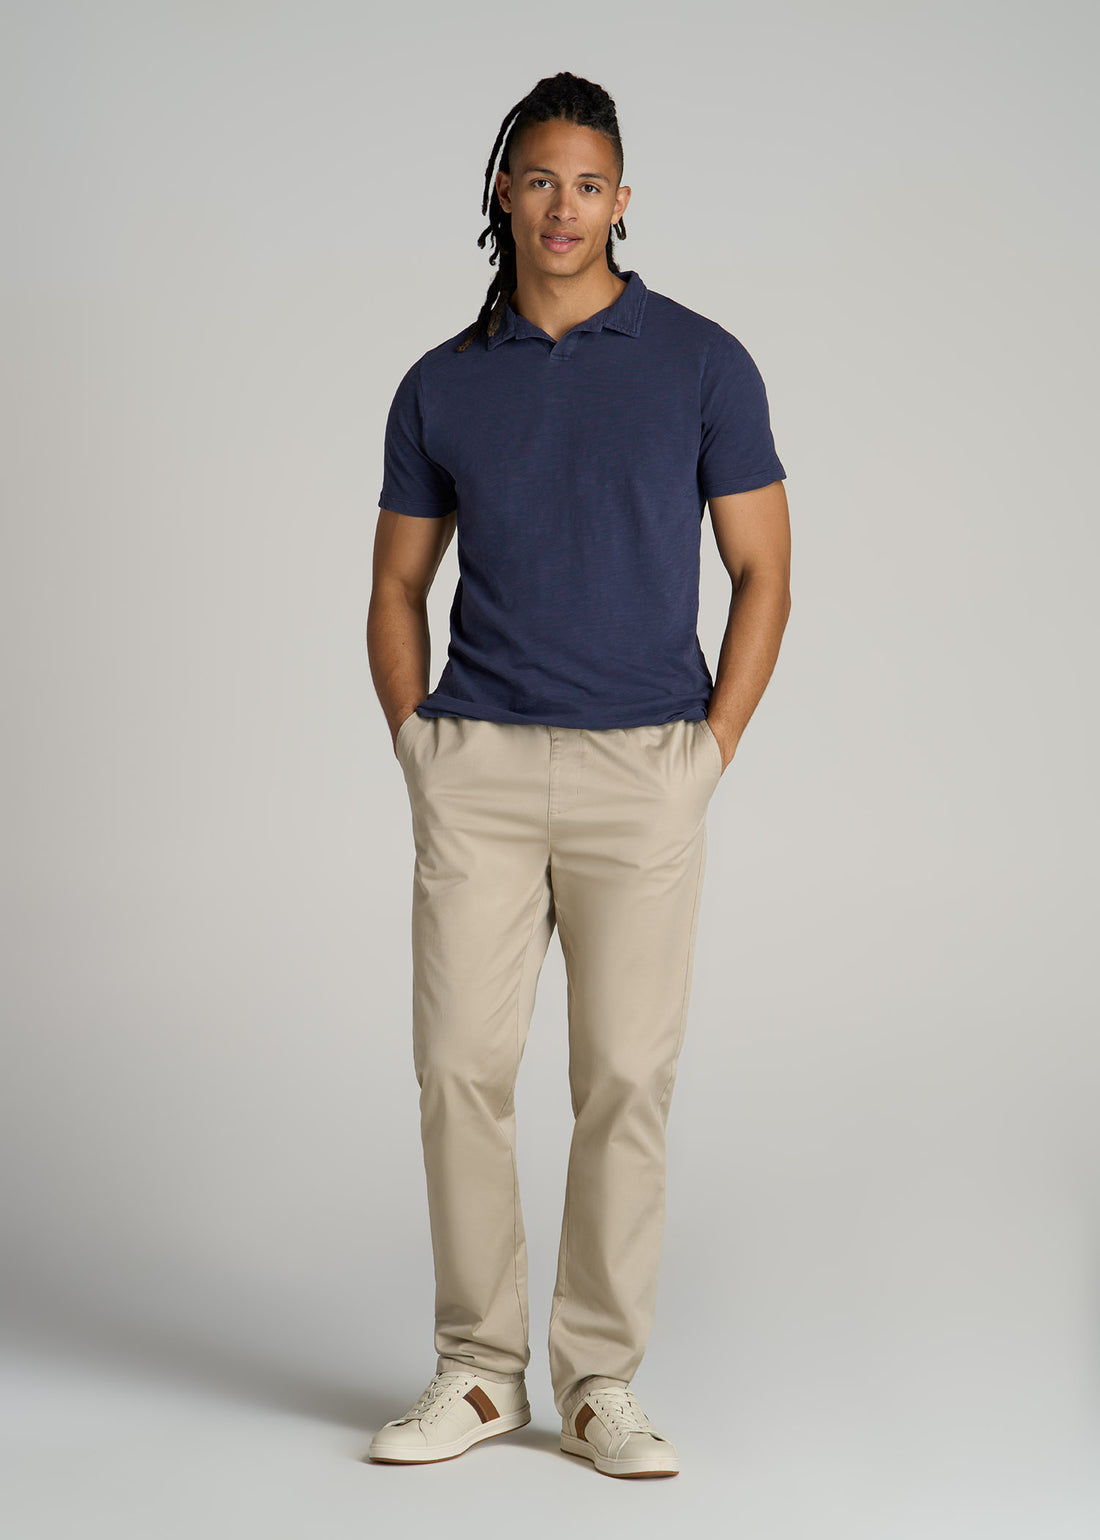 Slub Men's Tall Polo Shirt | American Tall